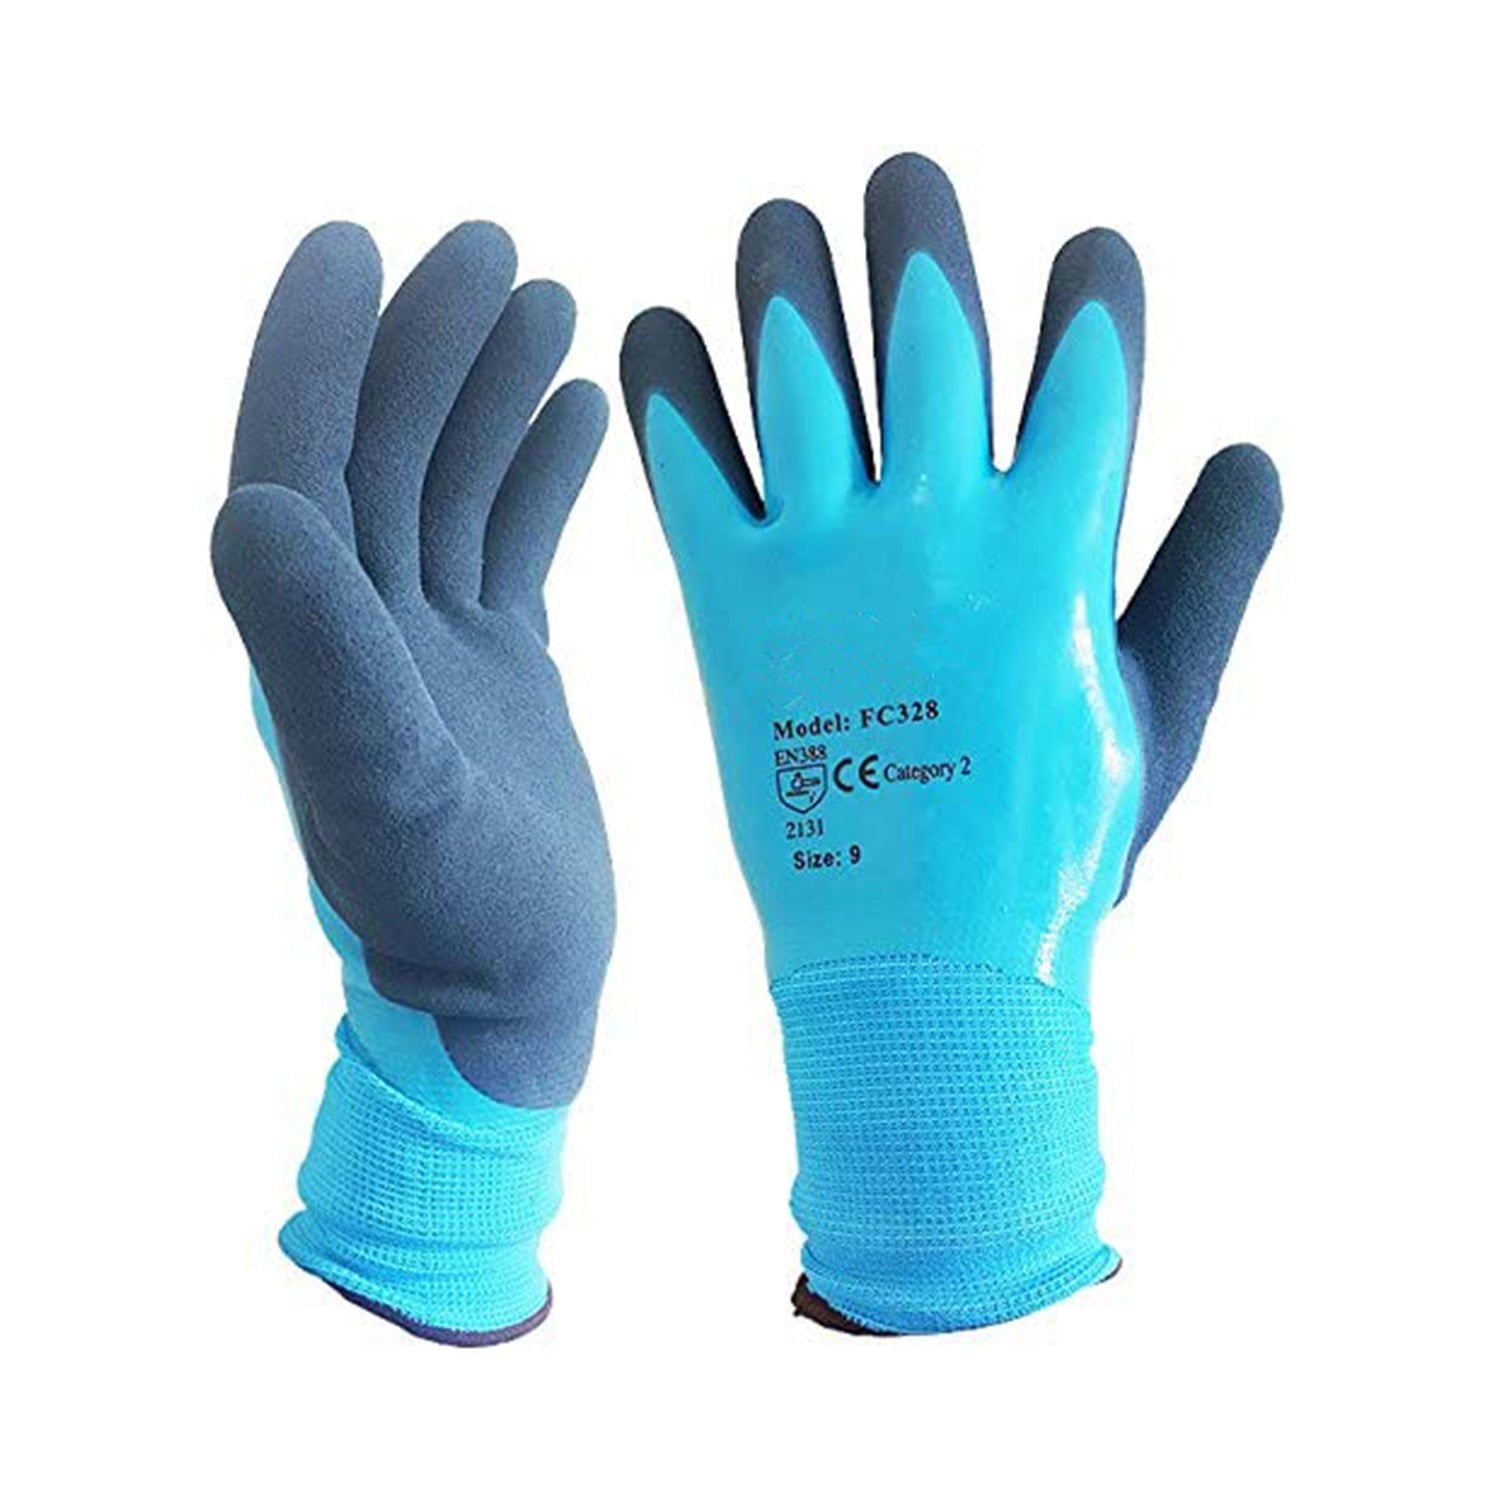 Esko Gloves In A Bottle, 240ml Pump - Esko Safety